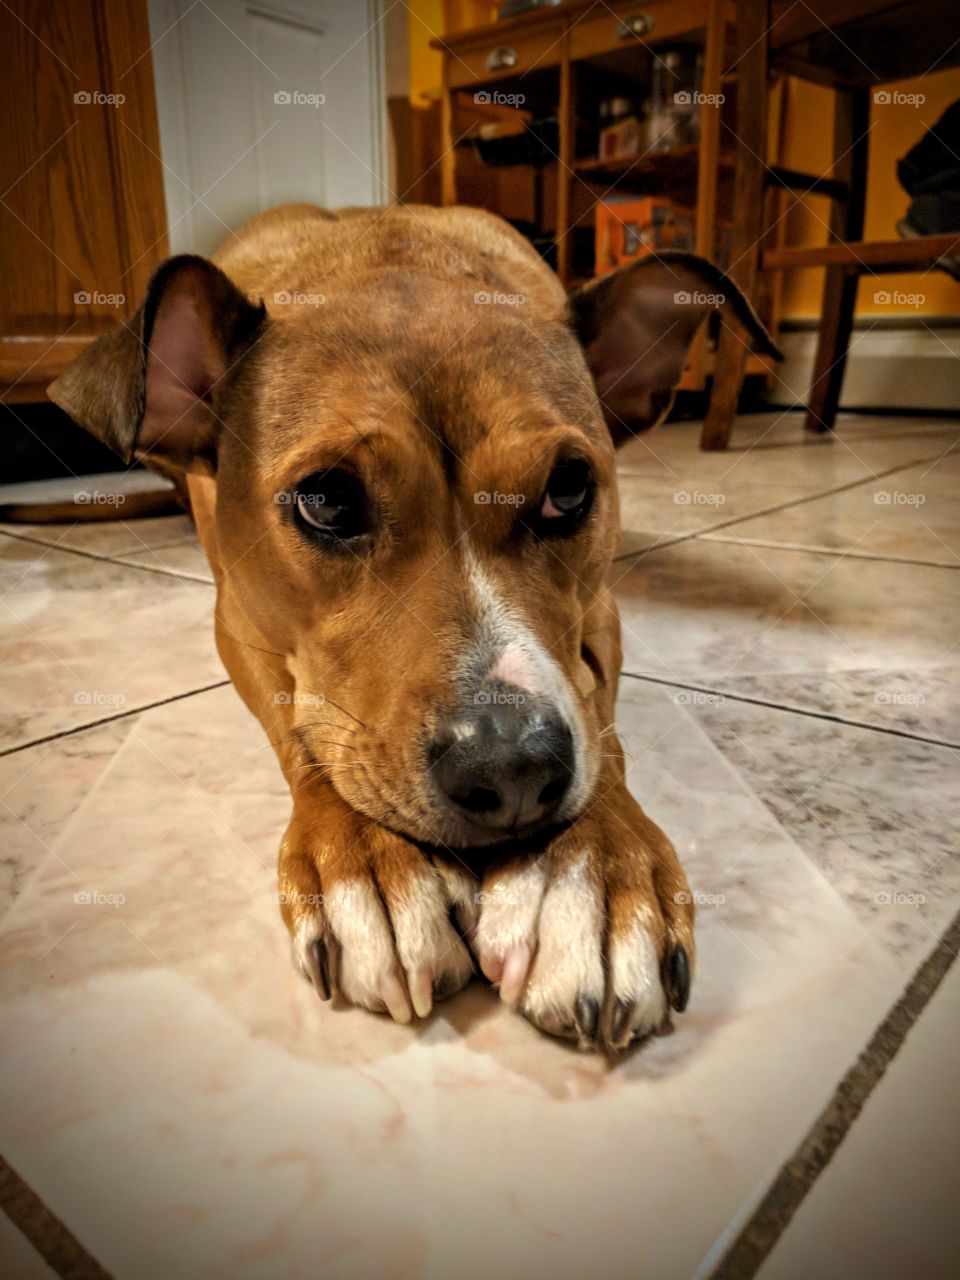 Resting Brown Dog On Tile Floor